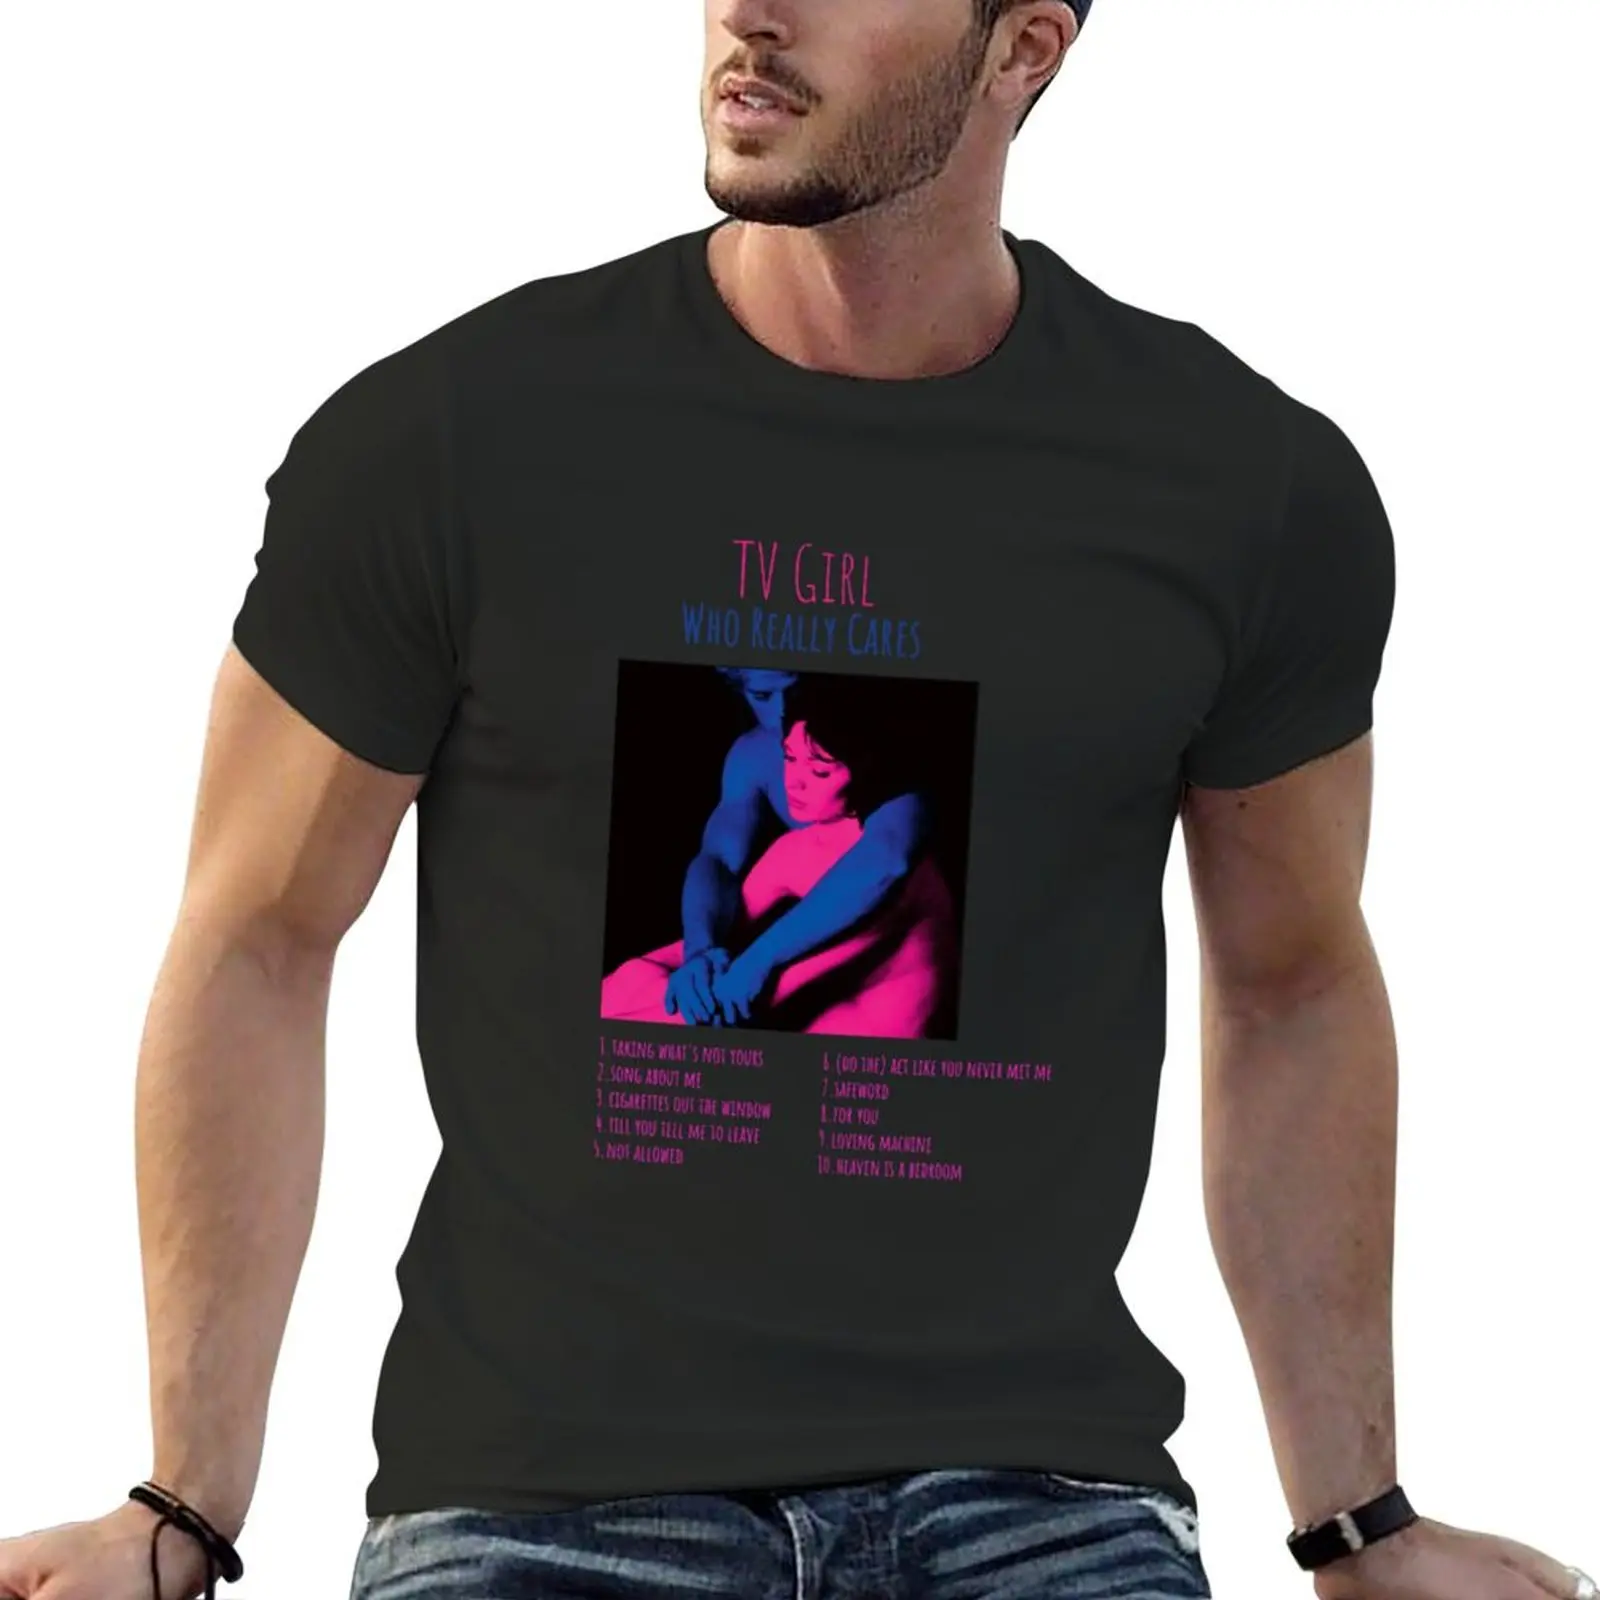 

ТВ футболка с логотипом девушки-кто действительно ухаживает за альбомом футболка с логотипом аниме одежда Эстетическая одежда для мальчика футболки для мужчин графика